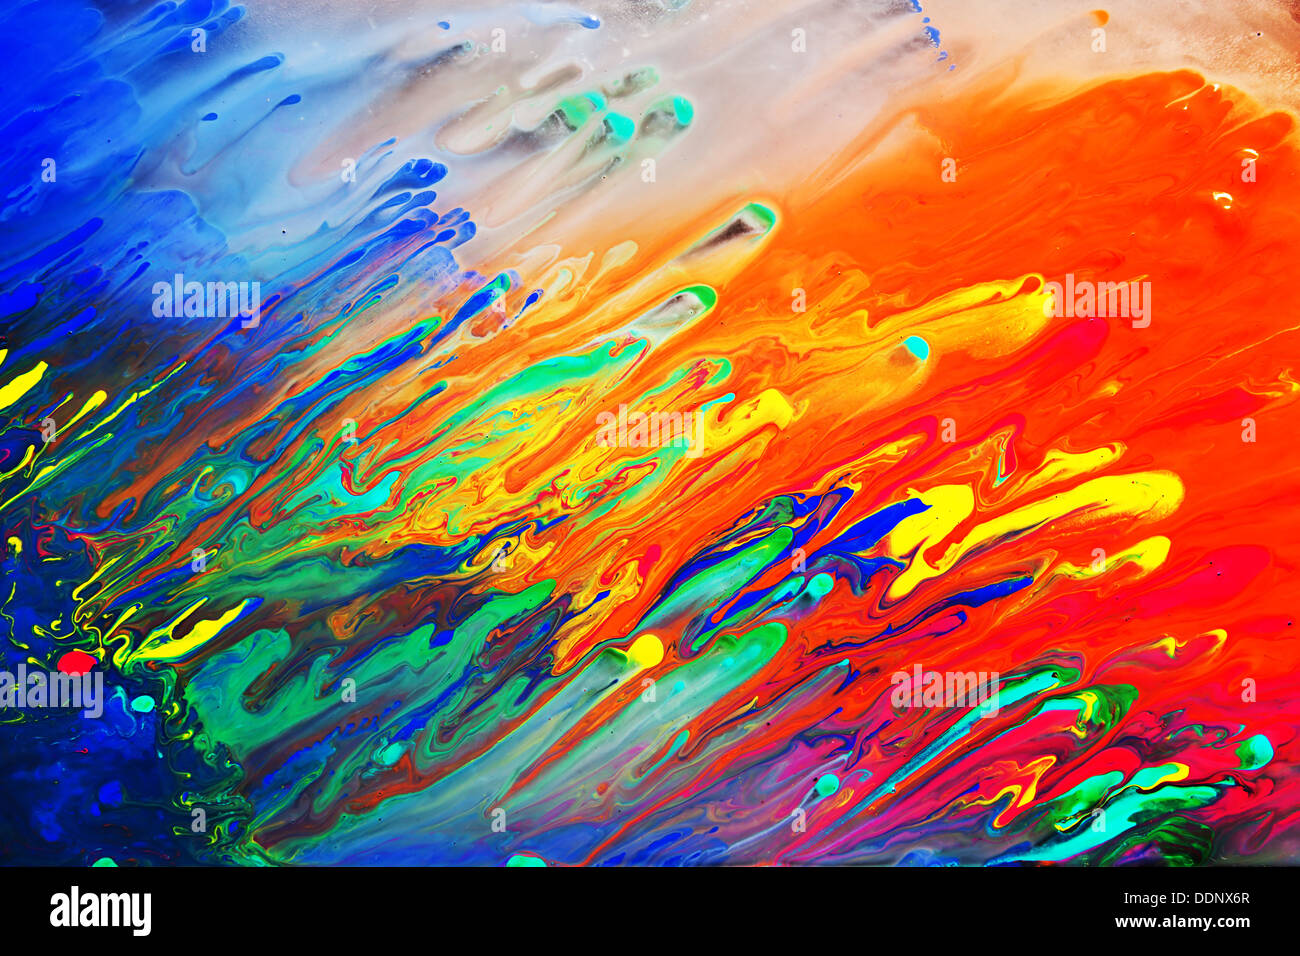 Brillantes y coloridas pinturas abstractas cerca de fondo Foto de stock